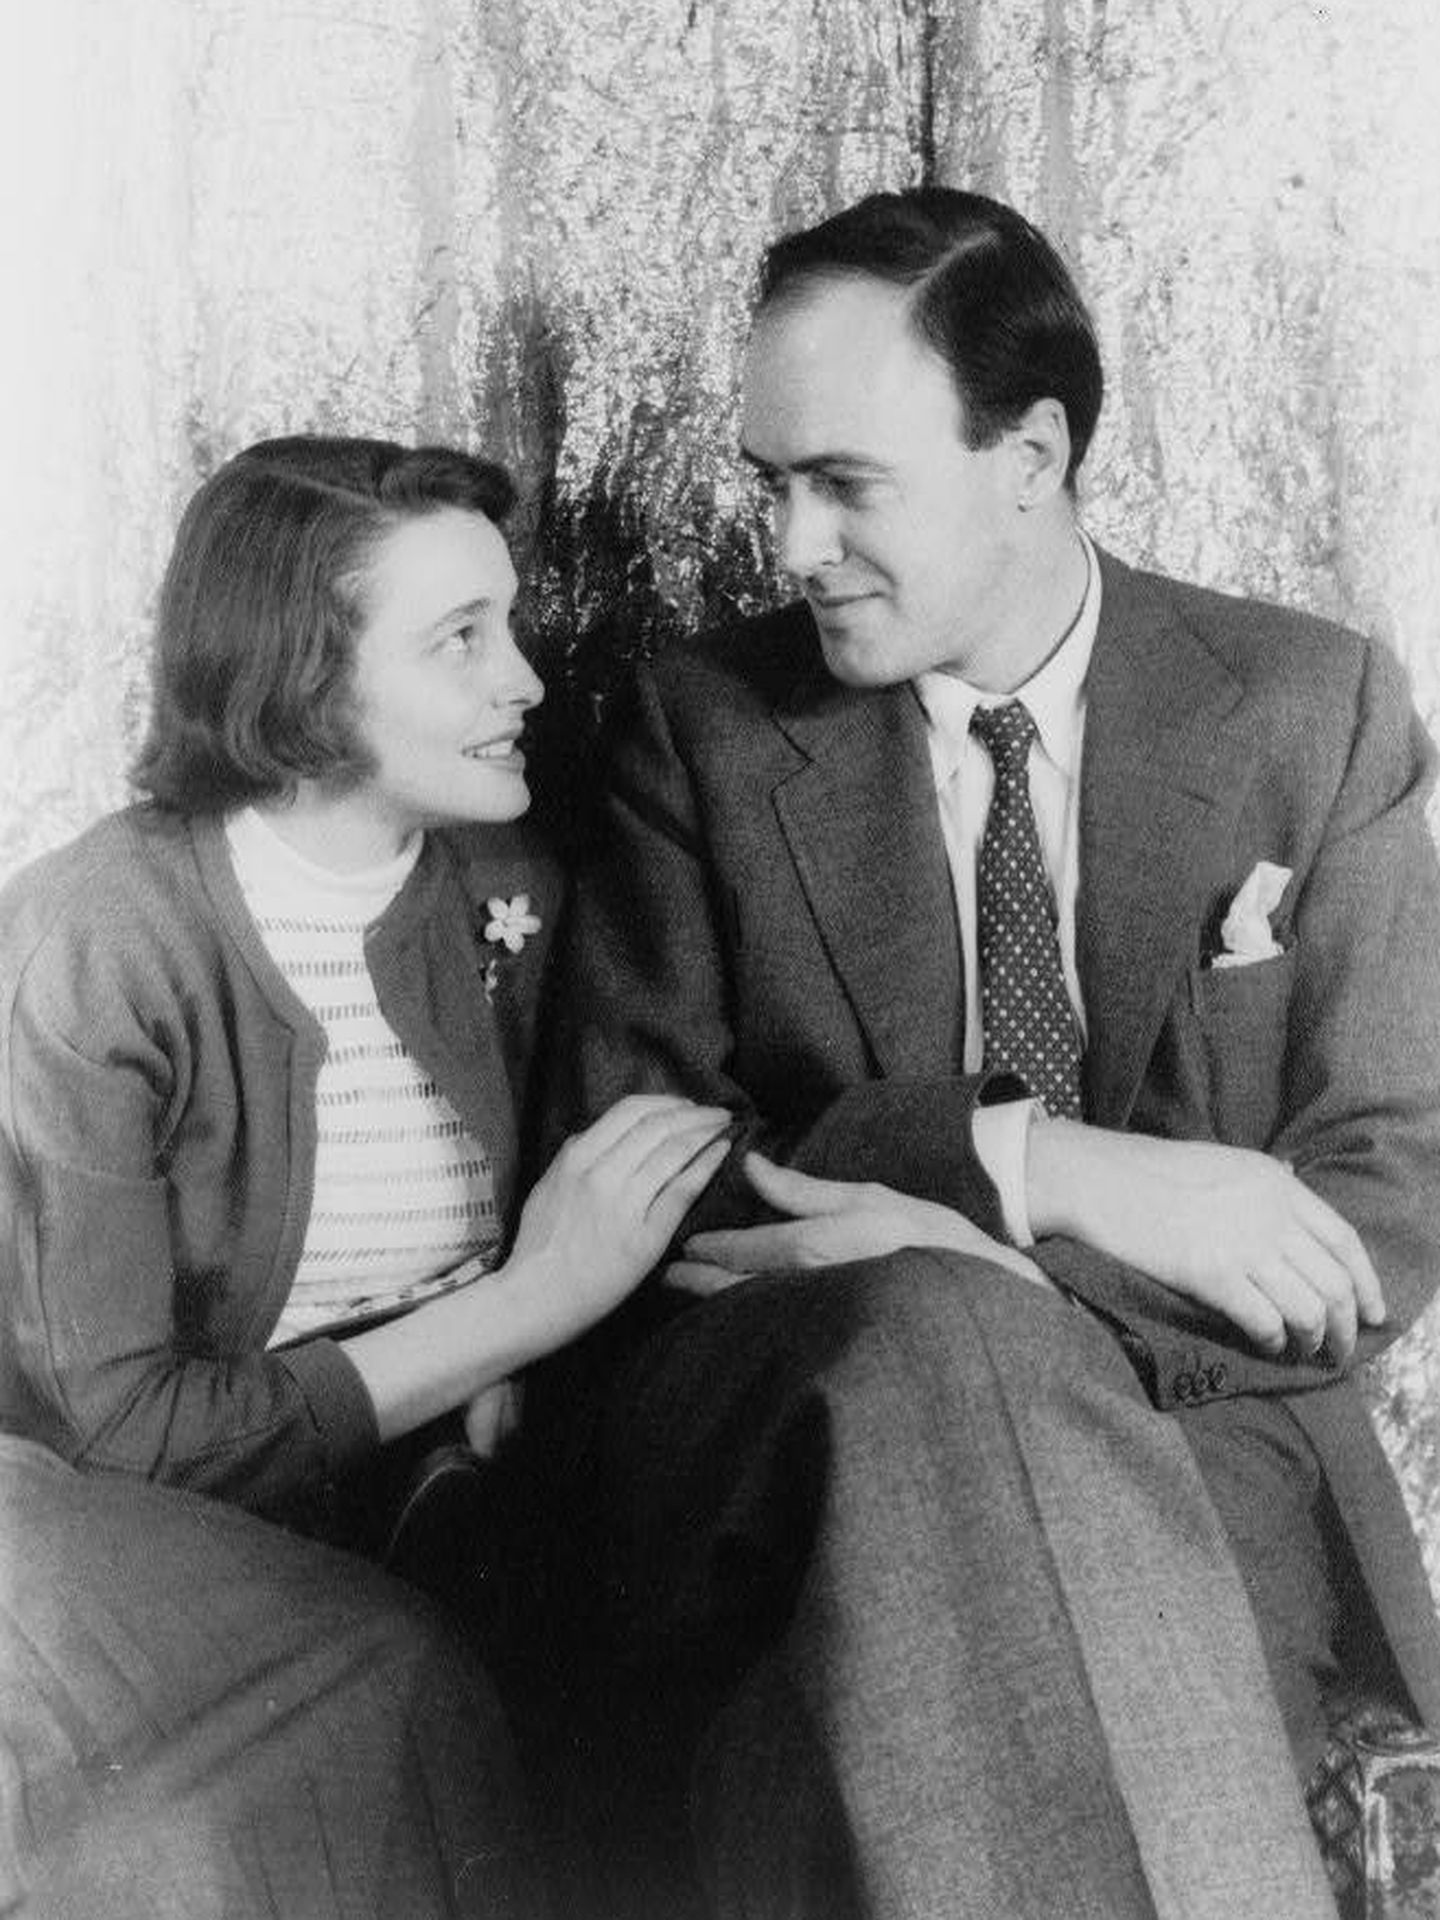 El matrimonio formado por la actriz Patricia Neal y Roald Dahl